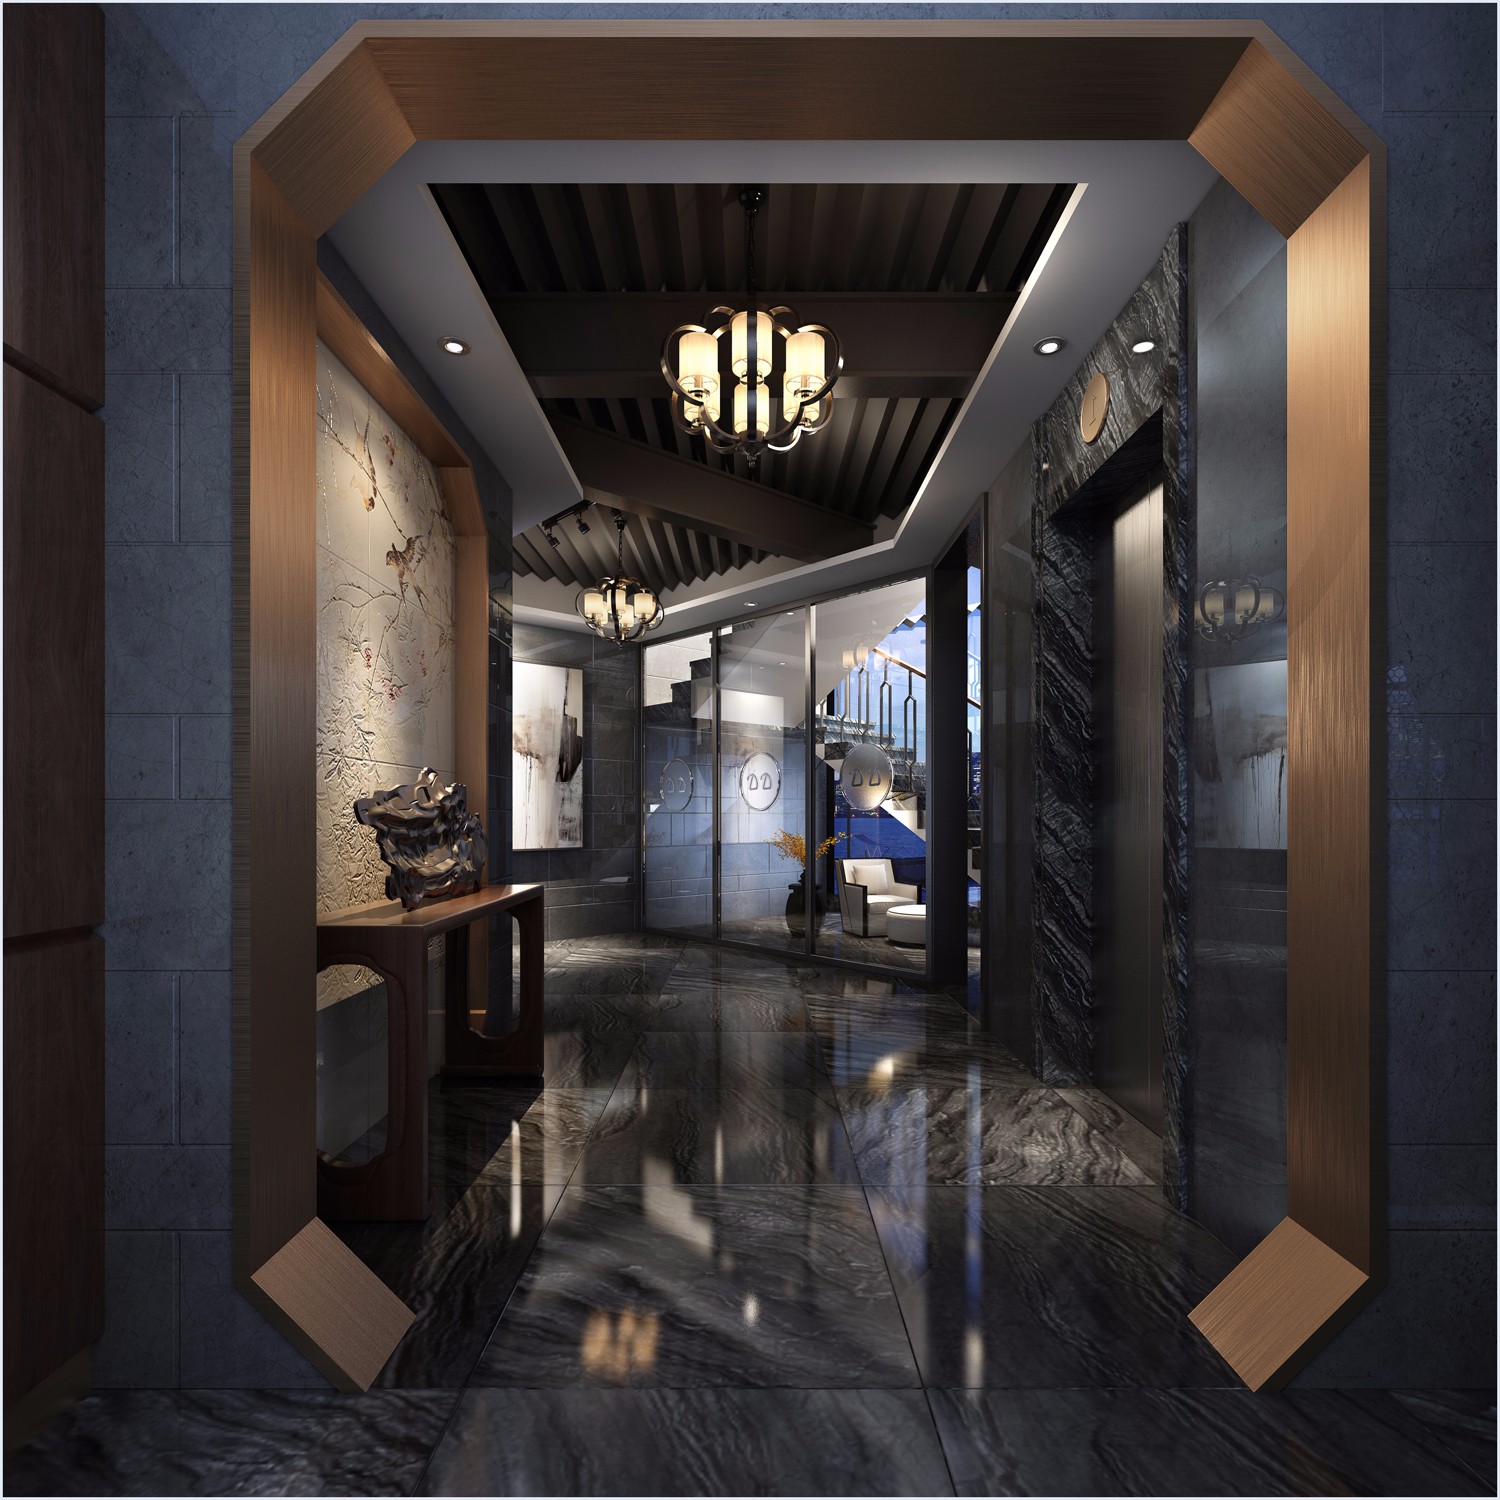 新中式酒店案例 - 效果图作品交流区 - 建E分享交流平台 - 建E室内设计网